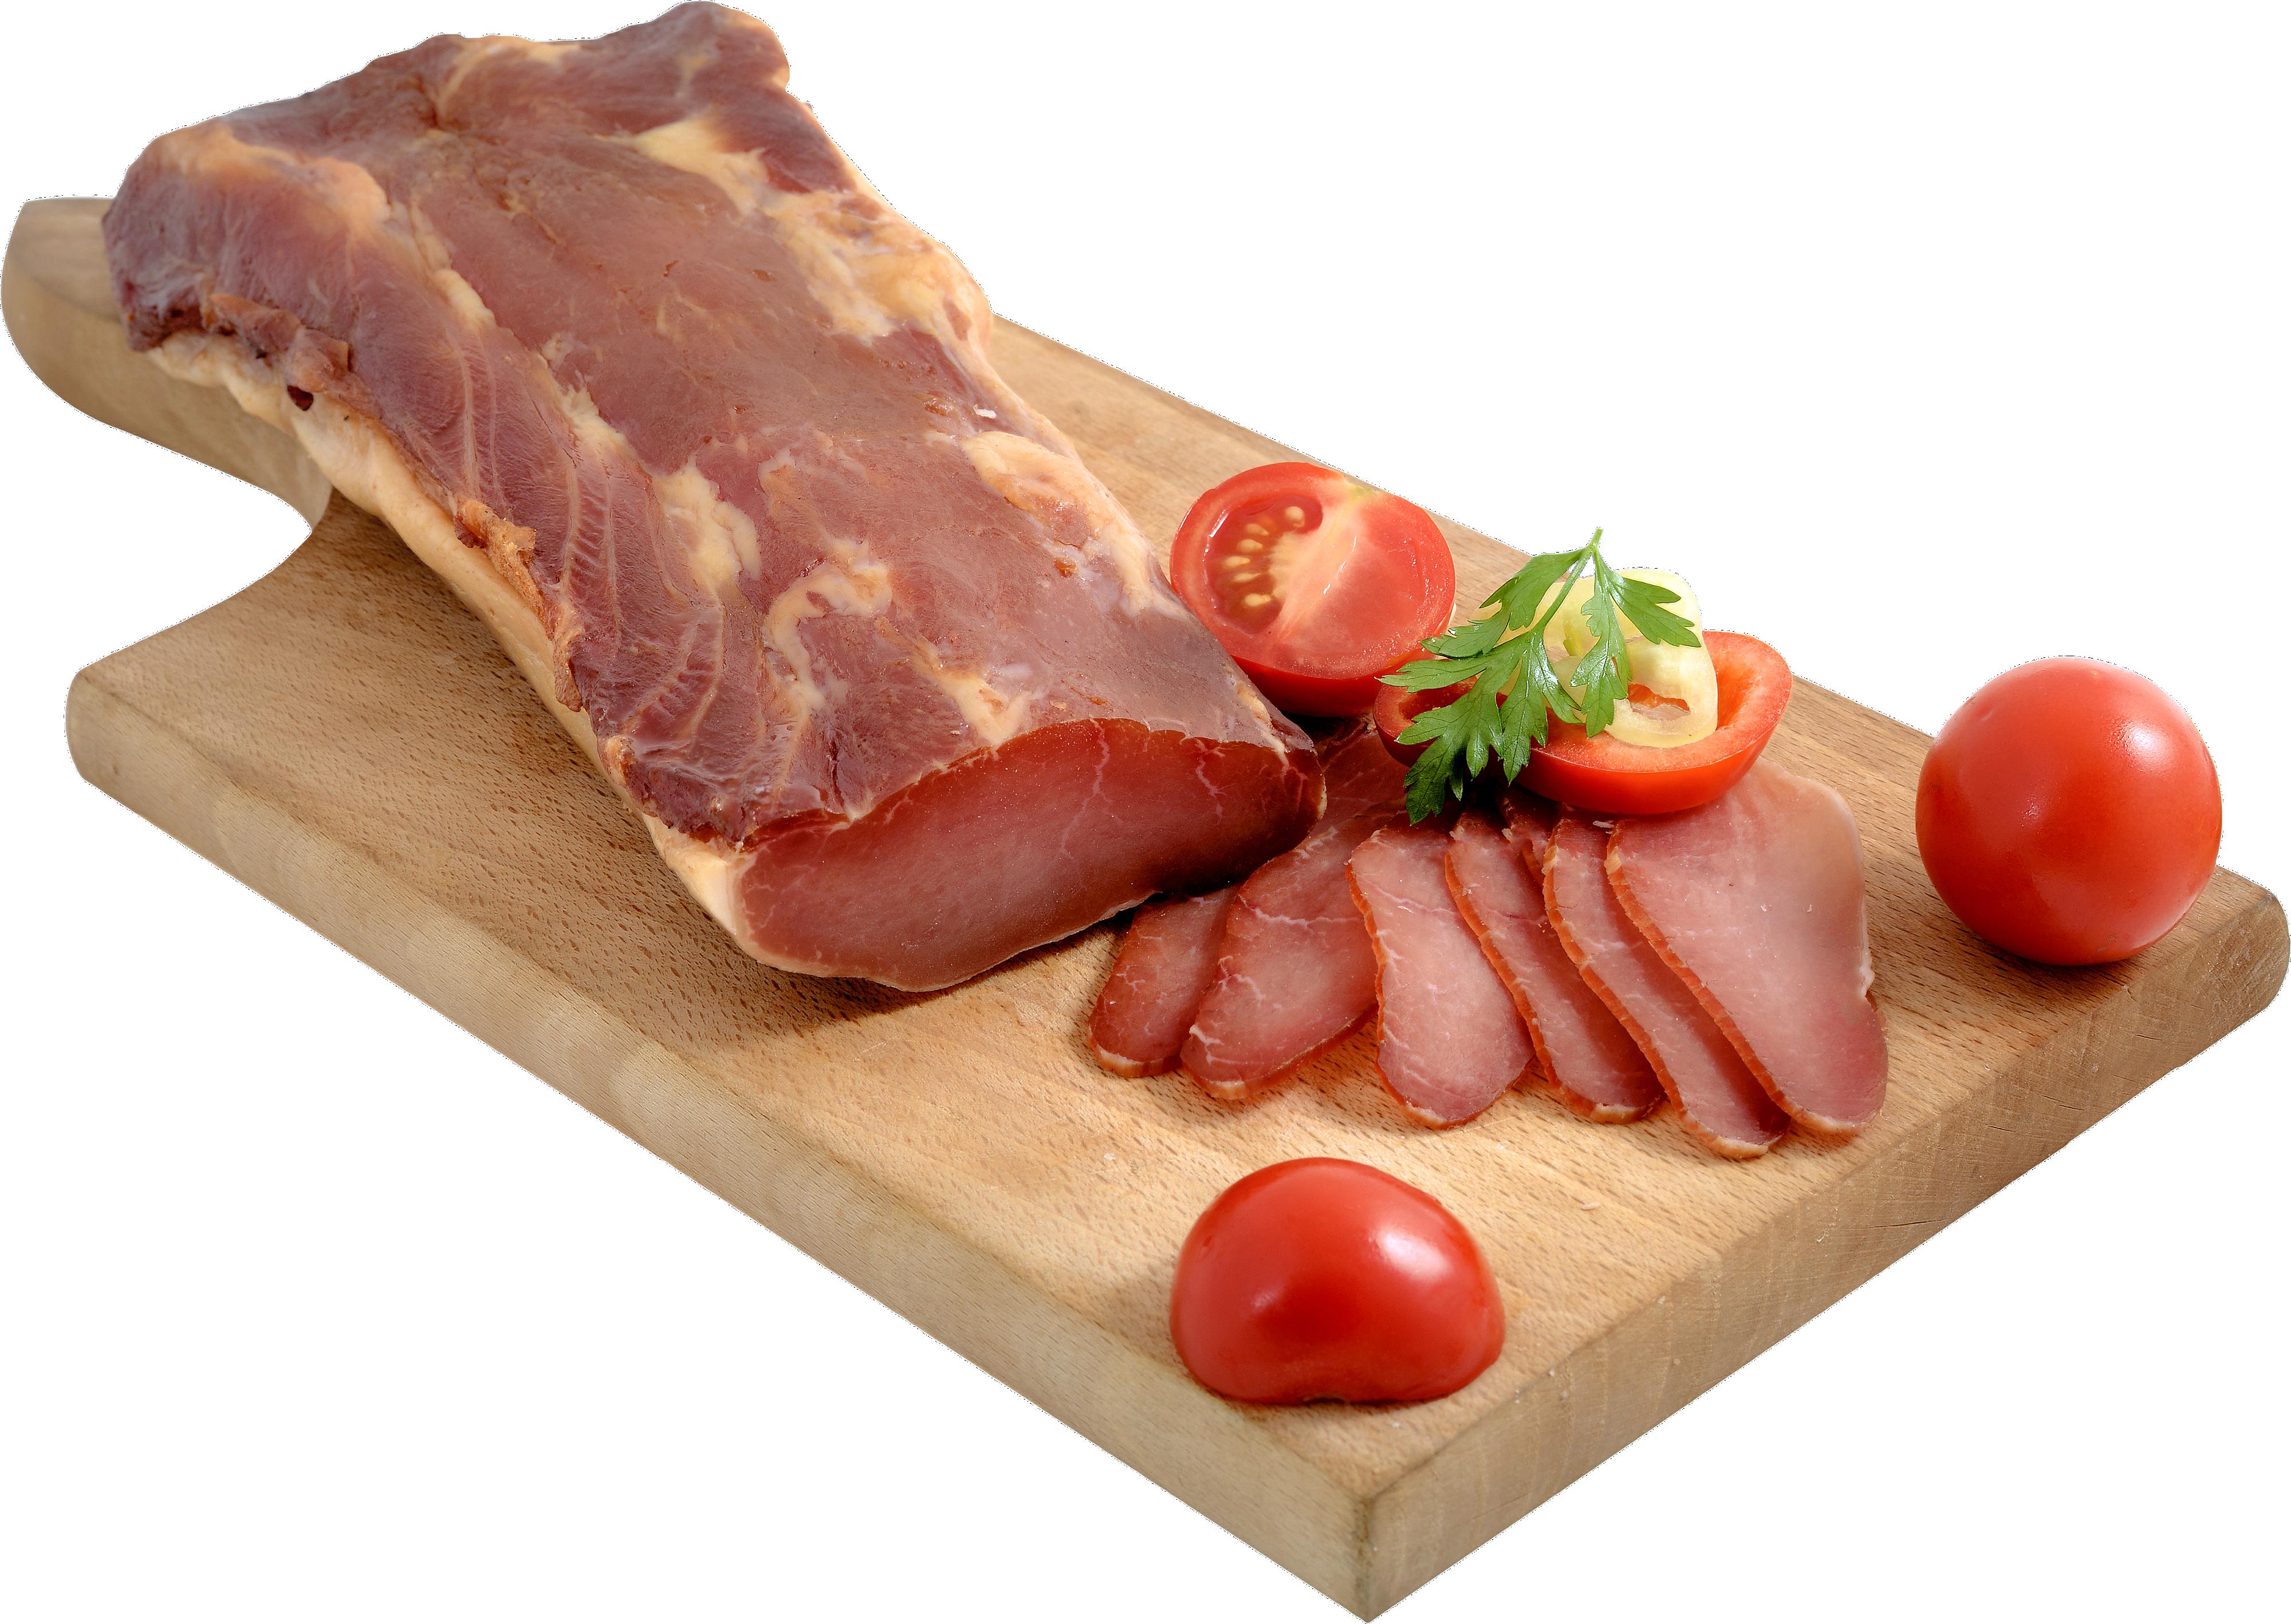 Slika za Pečenica suva svinjska Montella rinfuz 100g